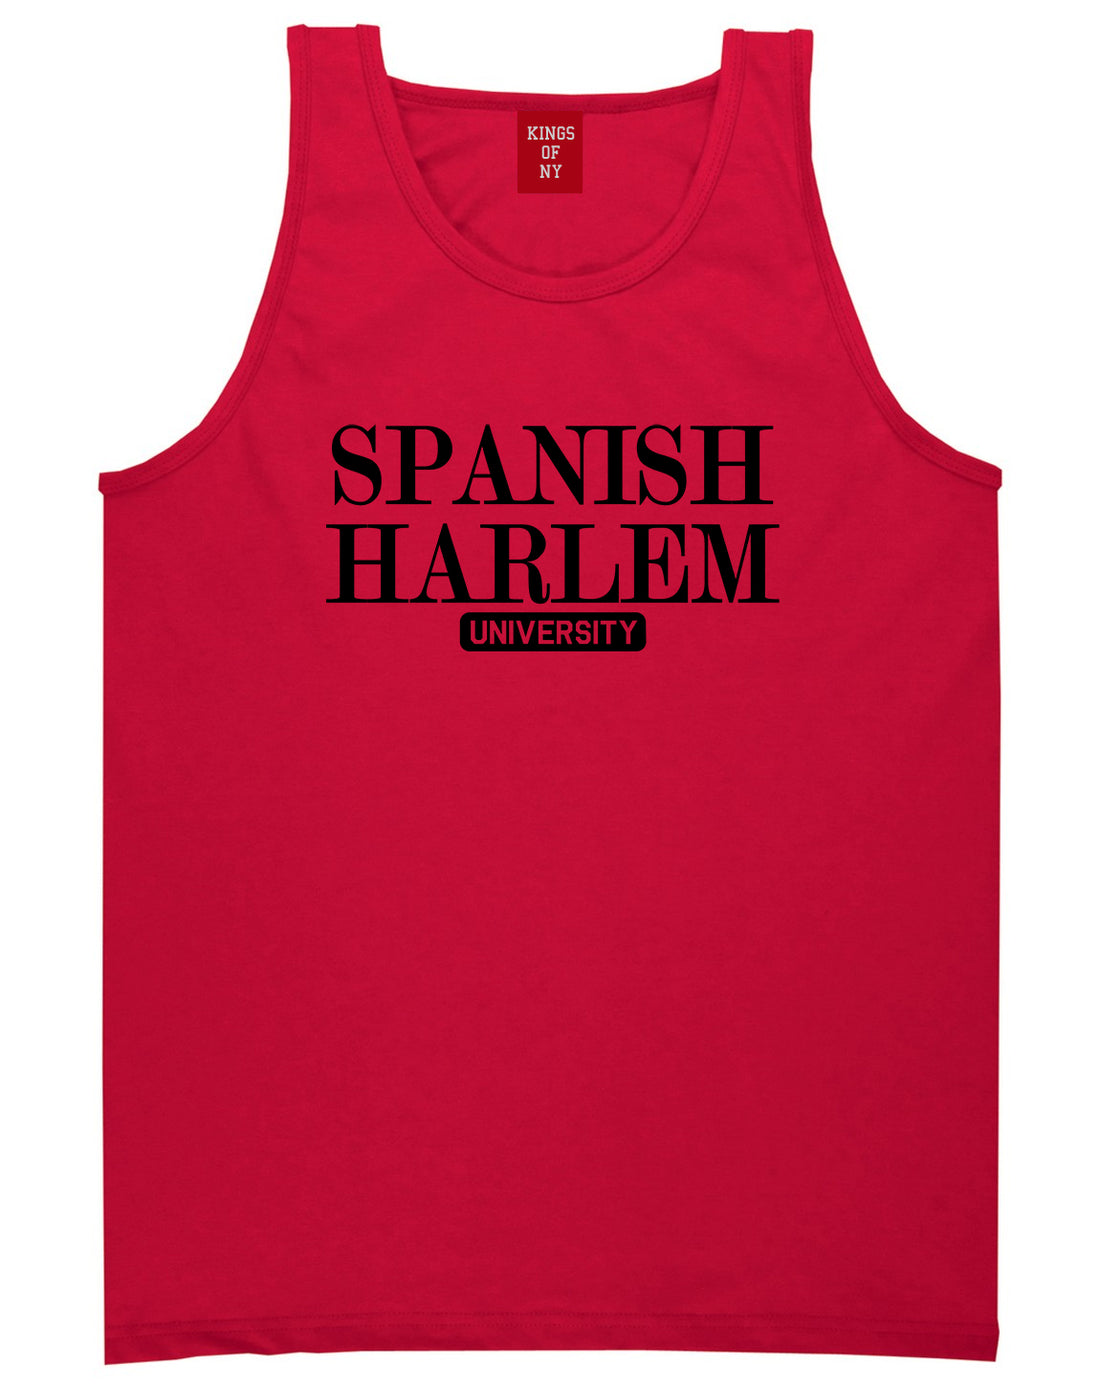 Spanish Harlem University New York Mens Tank Top T-Shirt Red